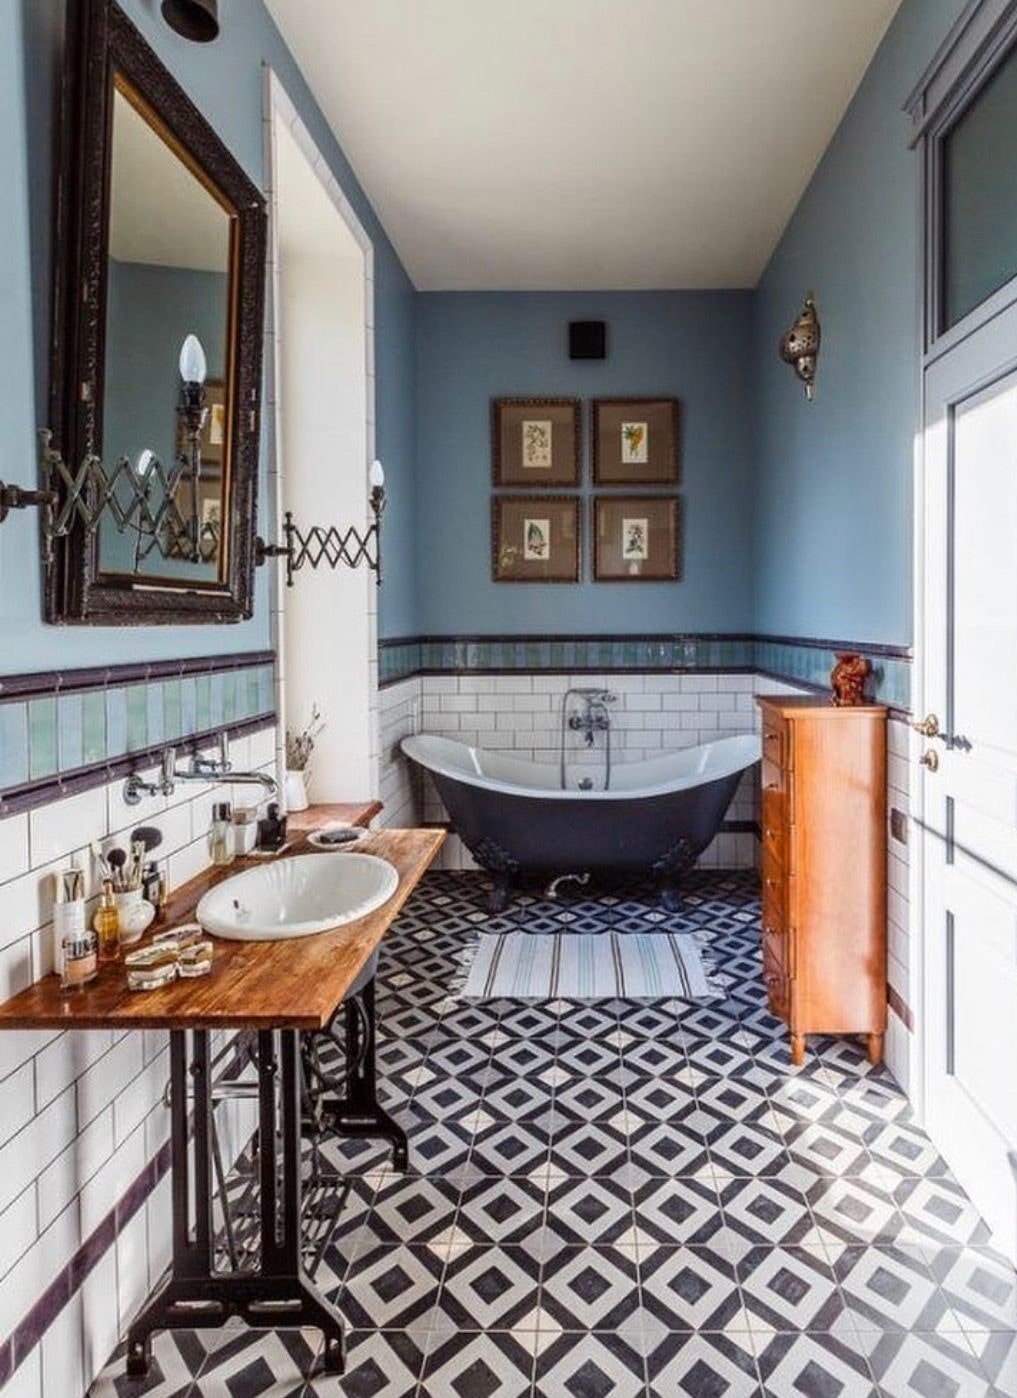 13 красивых идей для ванной комнаты в стиле ретро